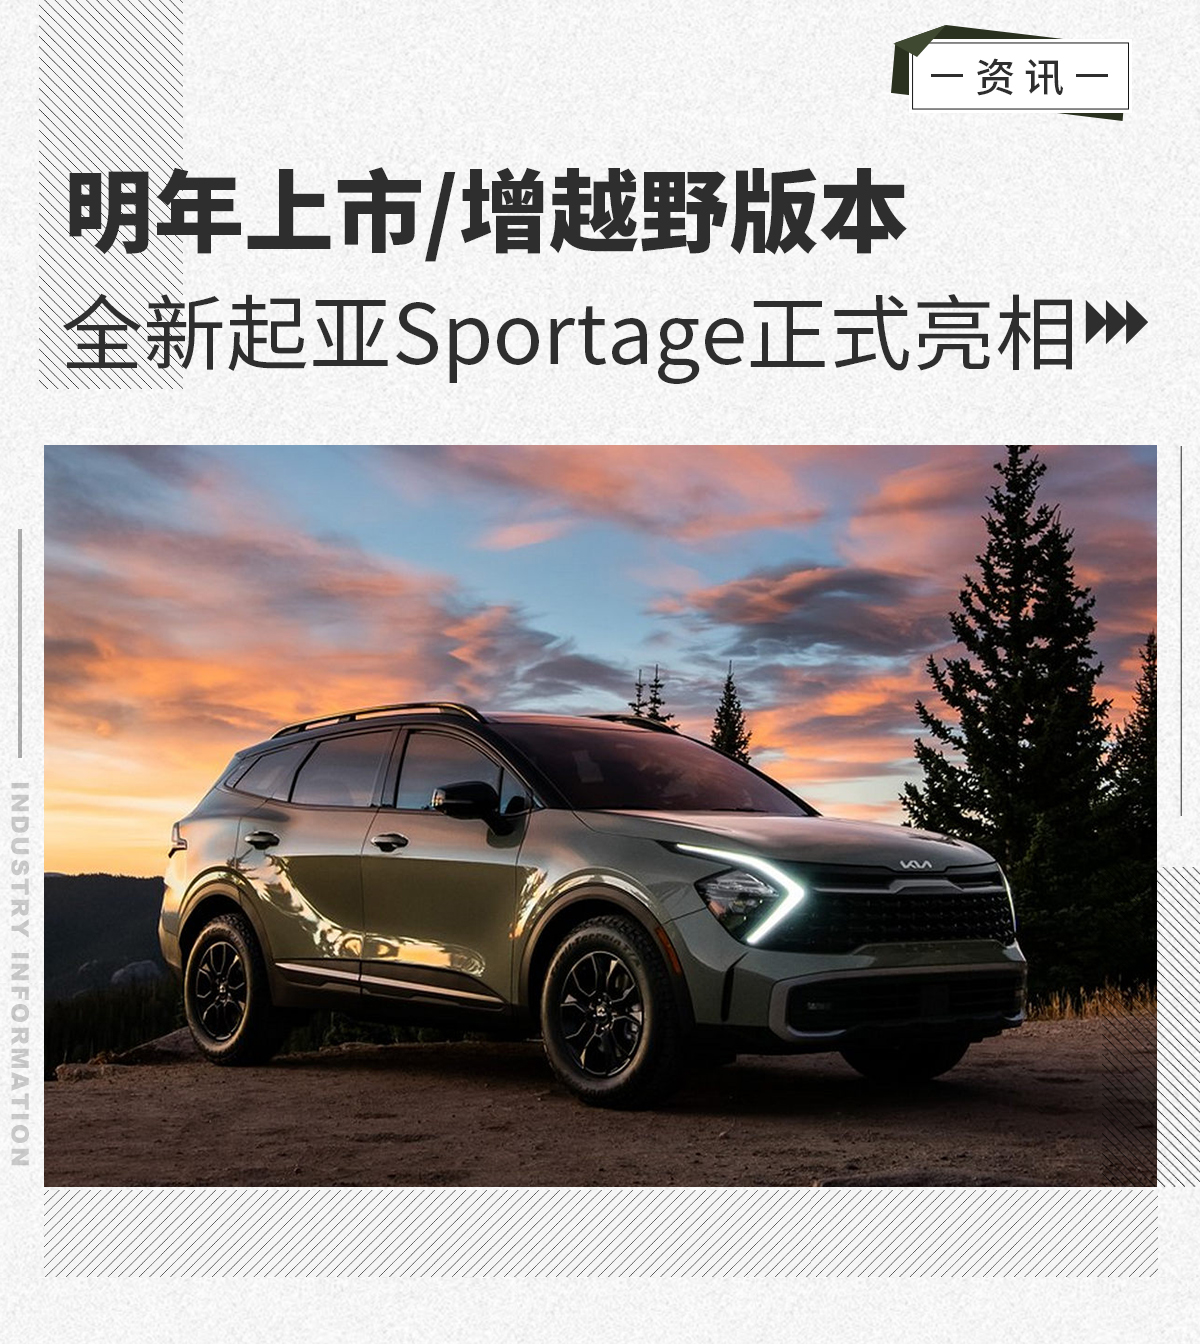 全新起亚Sportage正式亮相 明年上市/增越野版本